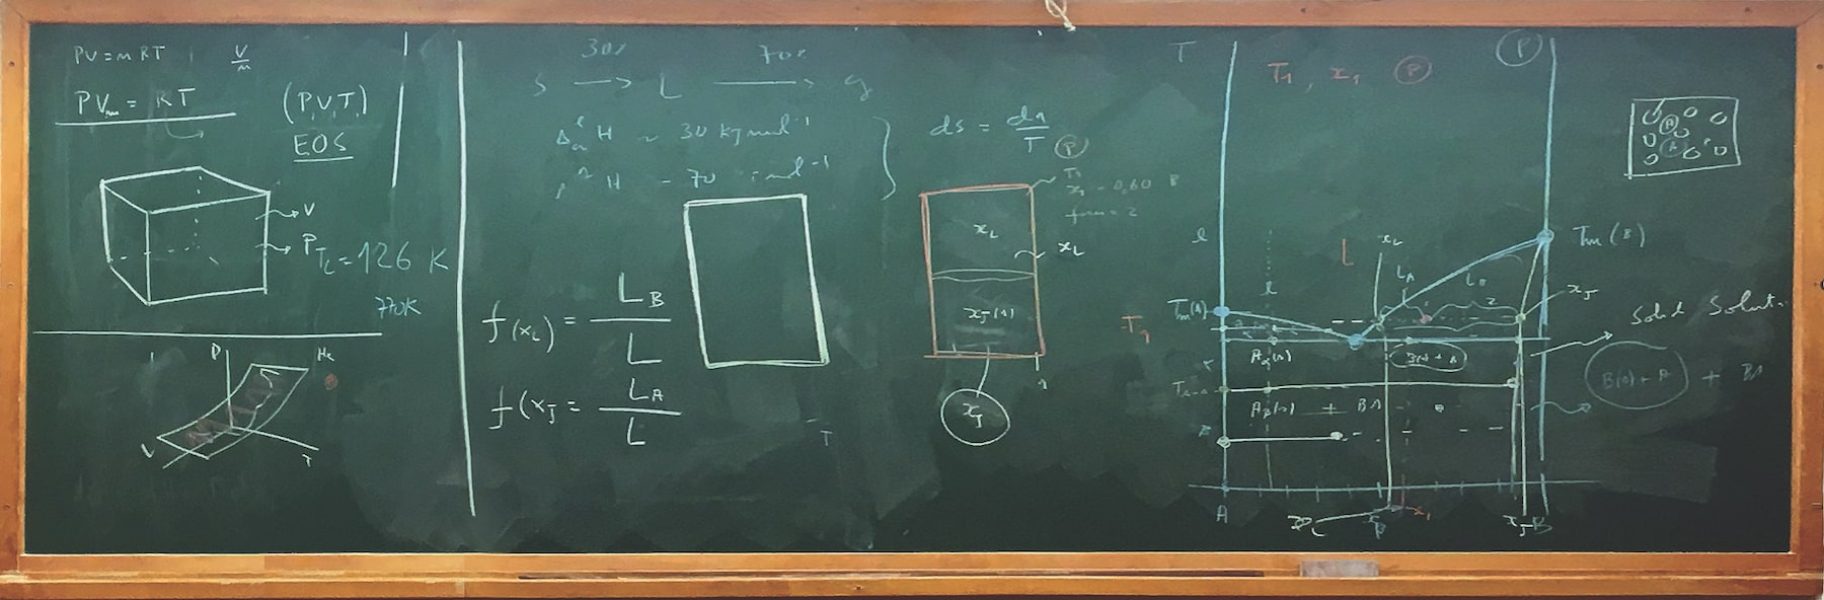 Aula sobre equações de estado (EoS), relação de equilíbrio entre fases (envolvendo o segundo princípio da termodinâmica)